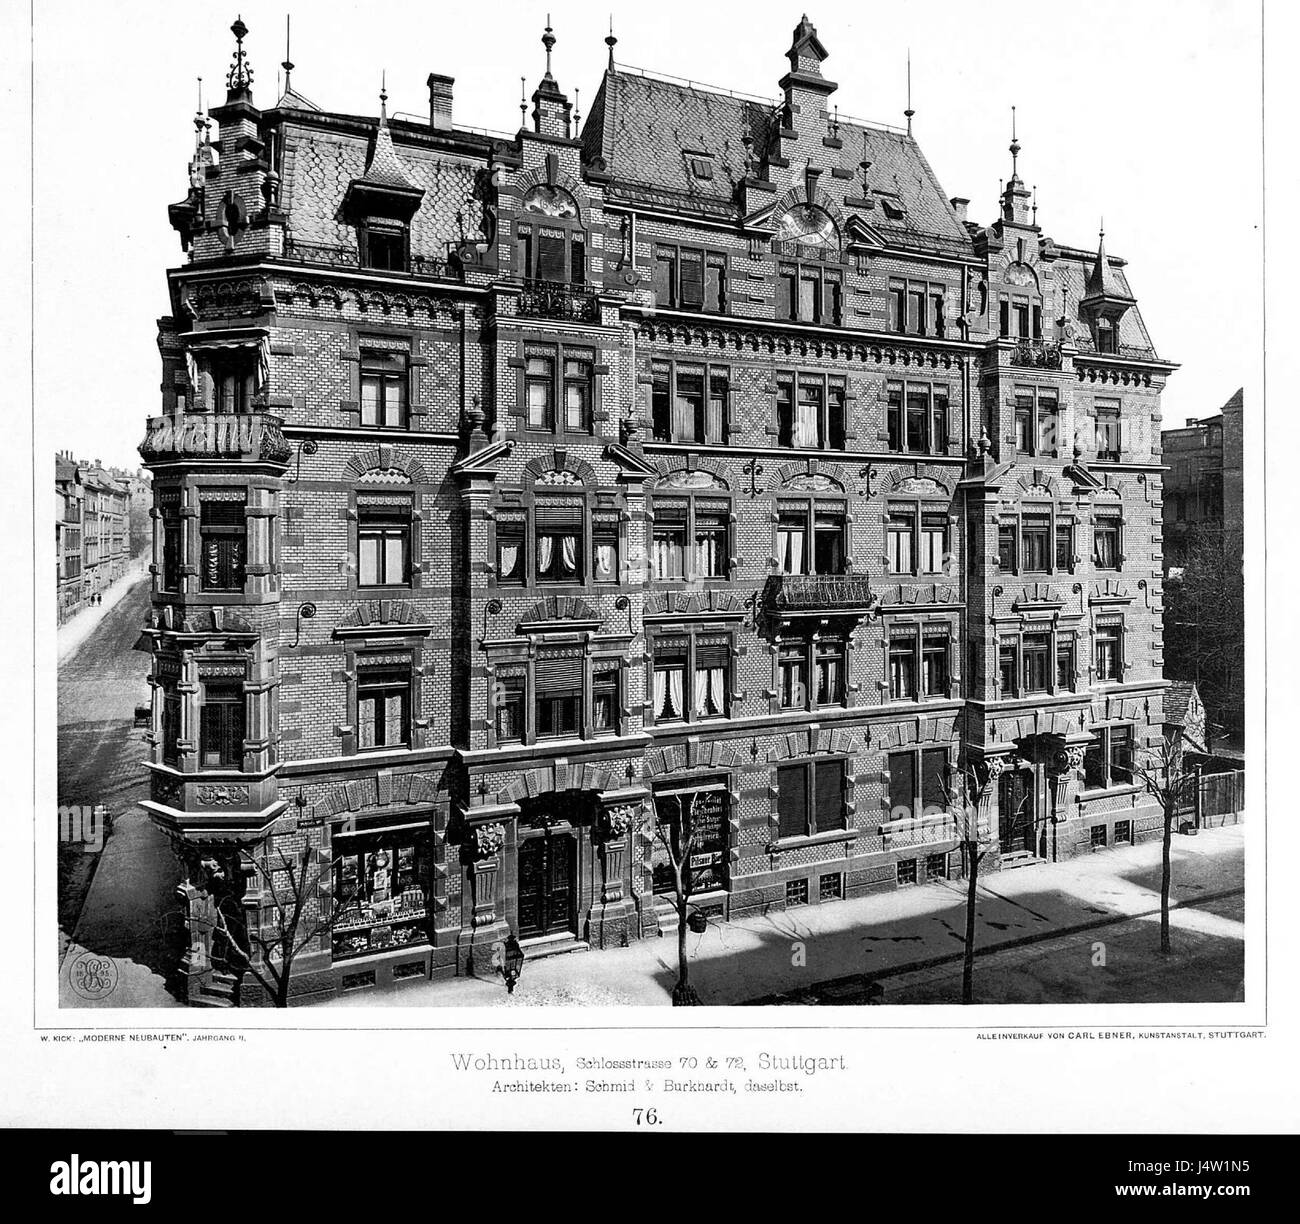 Wohnhaus Schlossstrasse 70 und 72, Stuttgart, Architekten Schmid & Burkhardt, Stuttgart, Tafel 76, Kick Jahrgang II Stock Photo